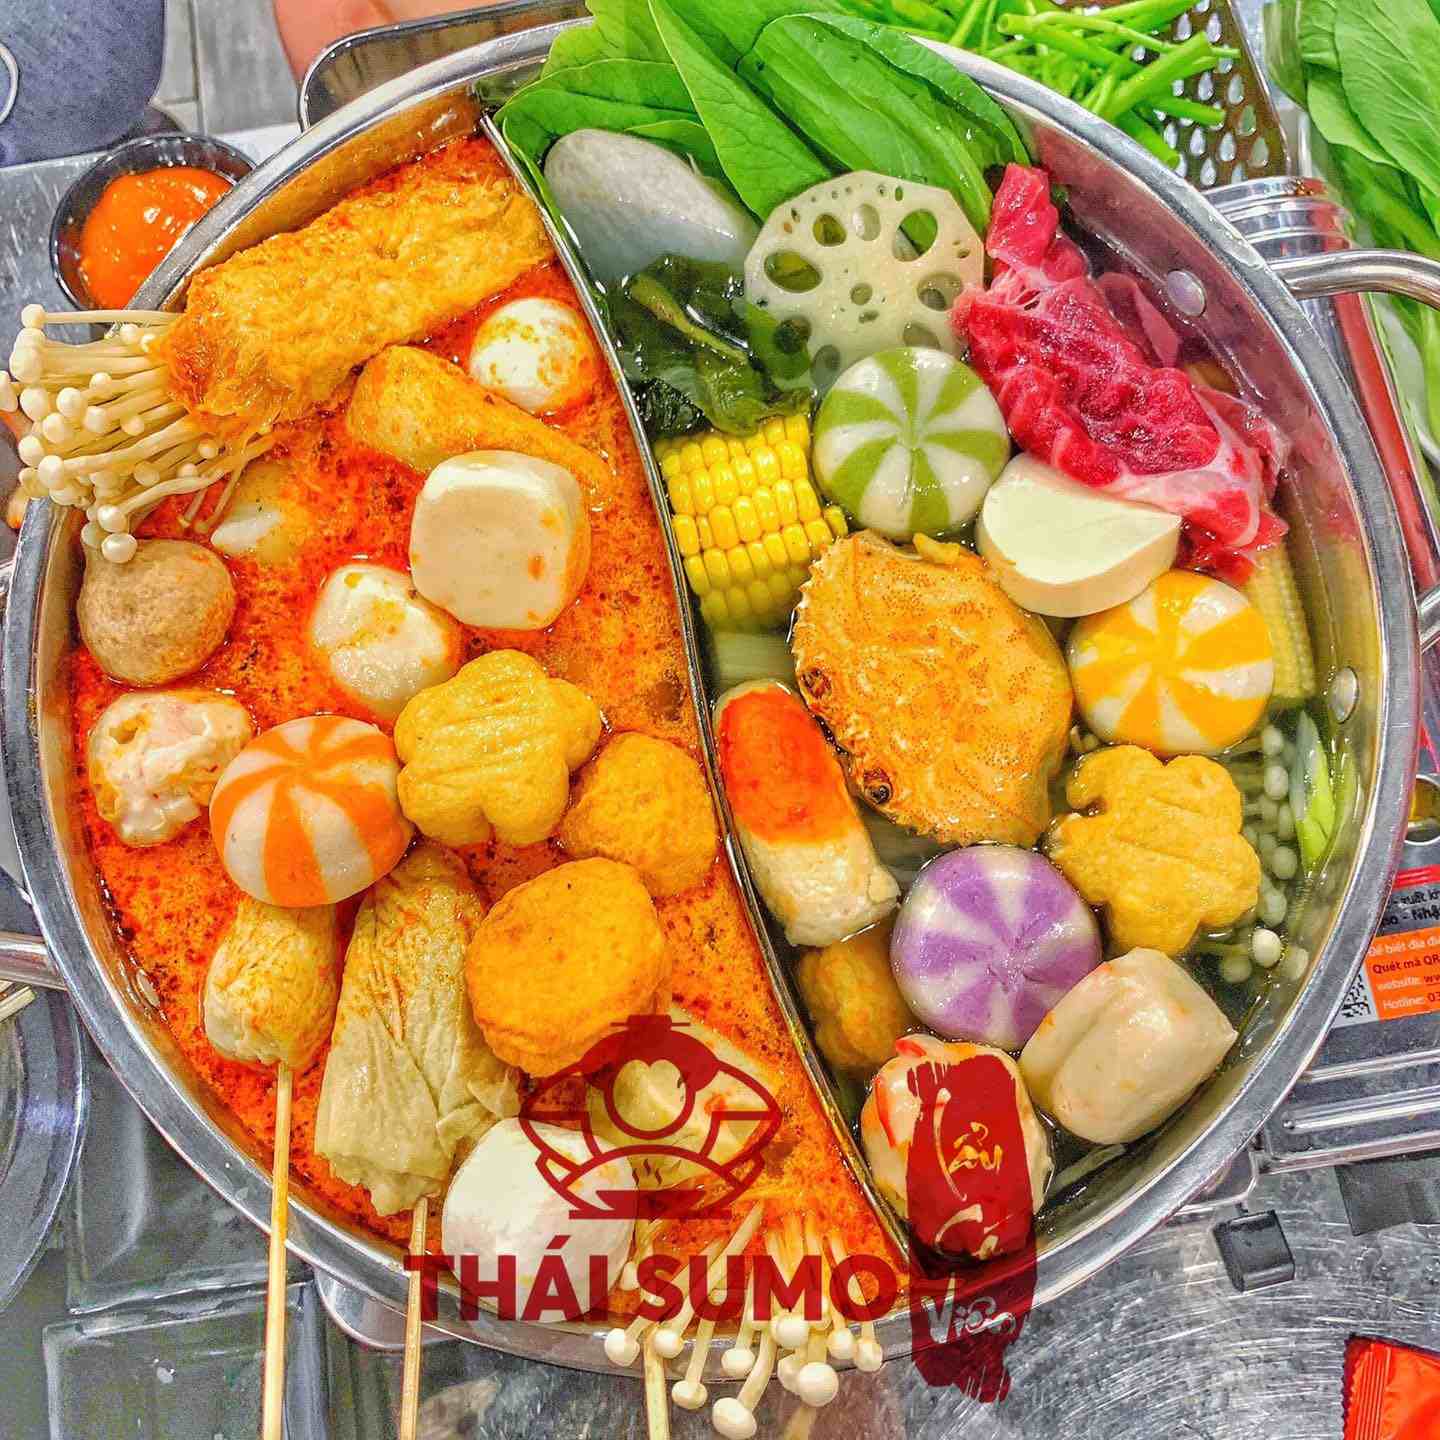 Trần Hữu Vinh tự hào với sản phẩm đa dạng và chất lượng của Thái Sumo